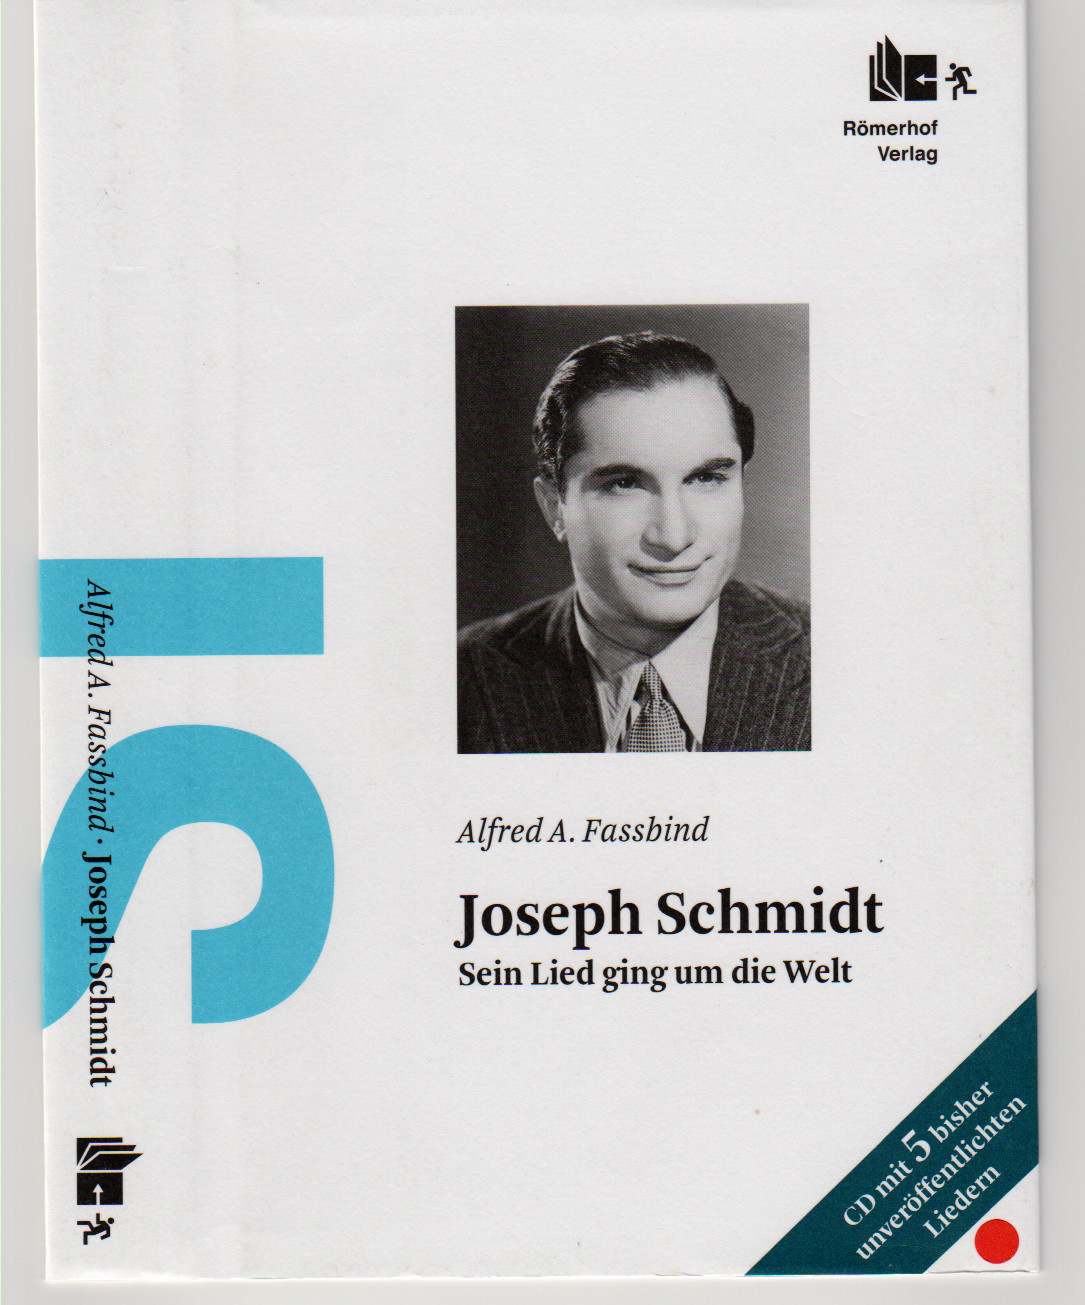 Alfred A. Fassbind | Joseph Schmidt – Sein Lied geht um die Welt | 336 Seiten | Hardcover | inkl. Audio-CD mit 27 Titeln | mit vielen s-w-Abbildungen | Rüffer & Rub-Verlag, Zürich 2012